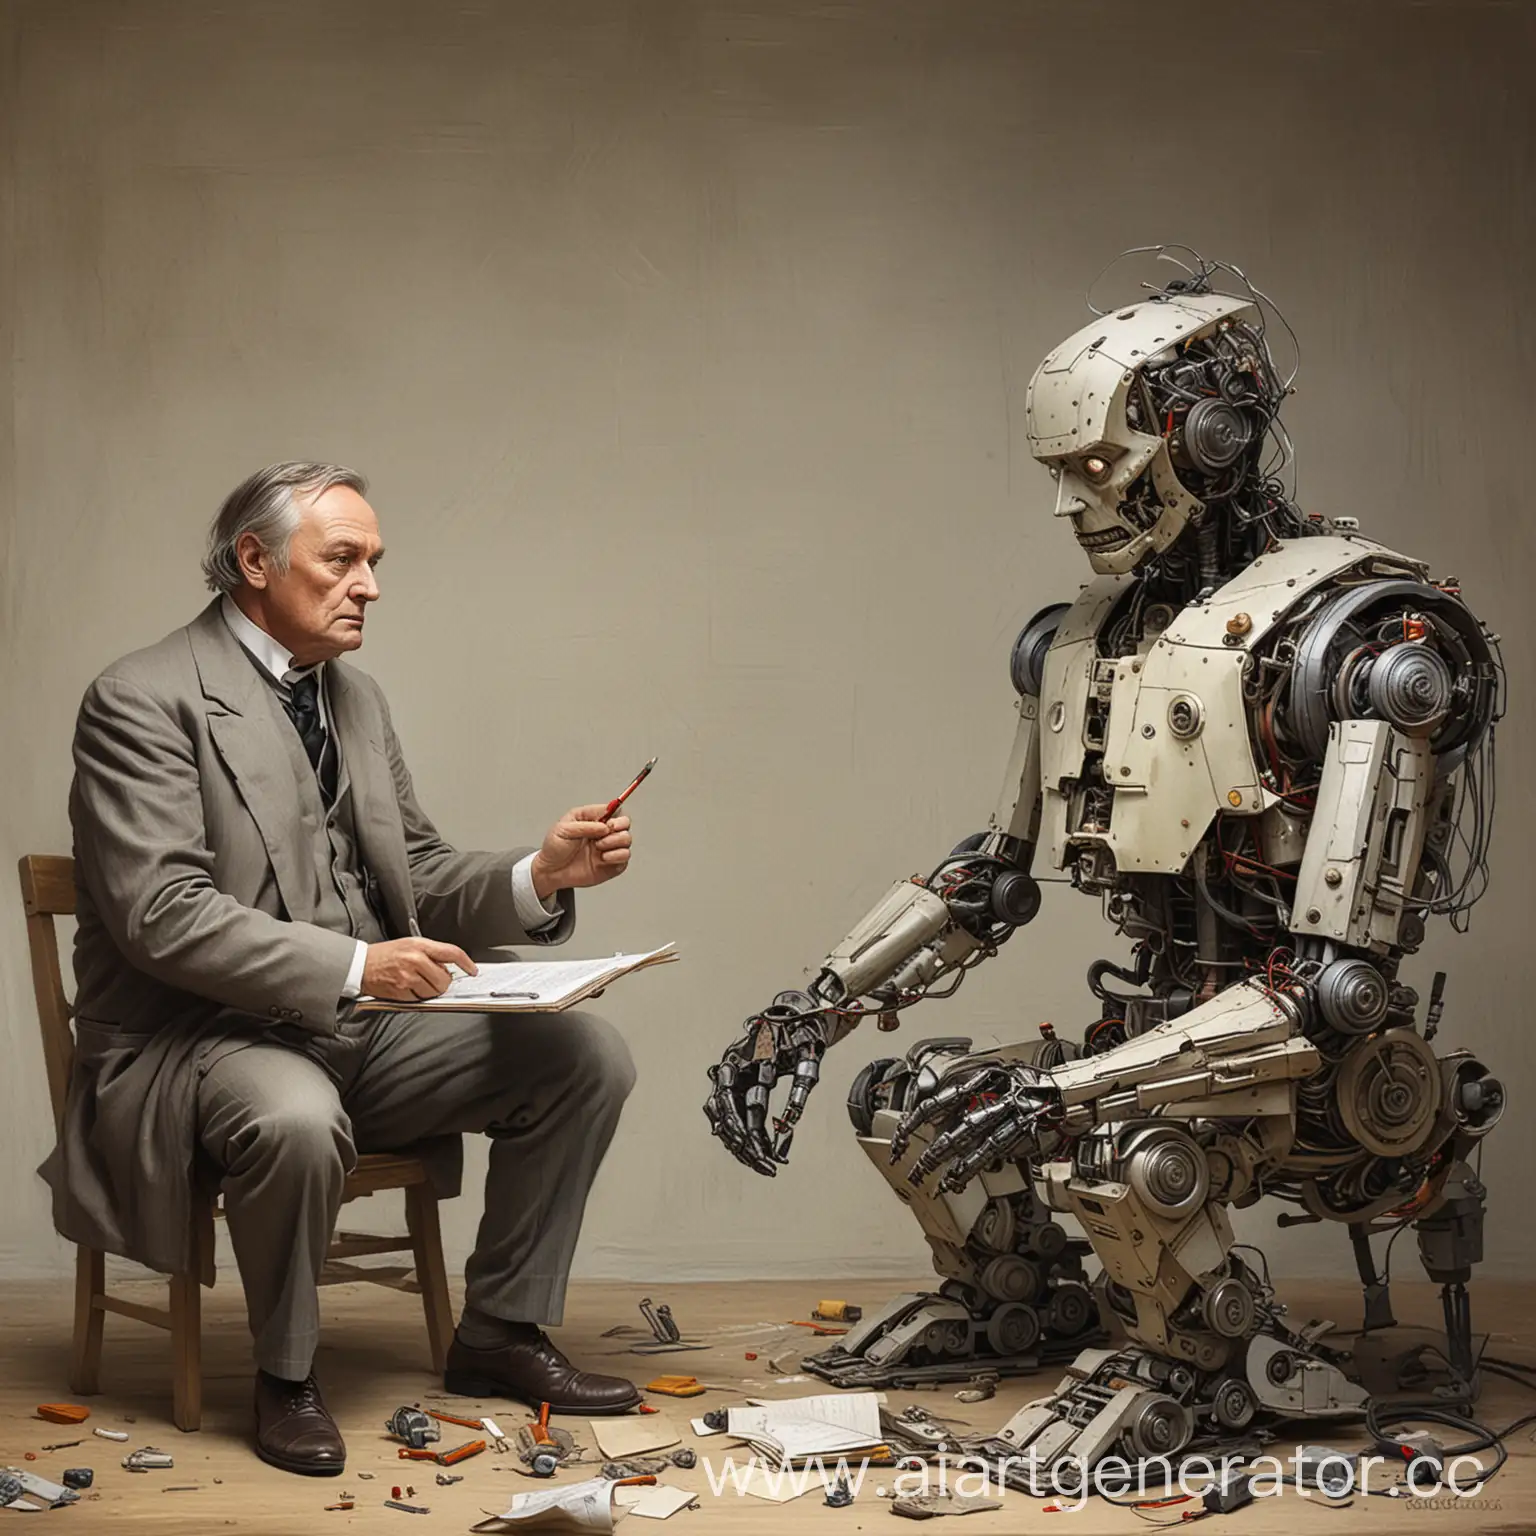 Нарисуй картинку, где конструктор Сергей Королев, философ Гегель и робот обсуждают энергетику